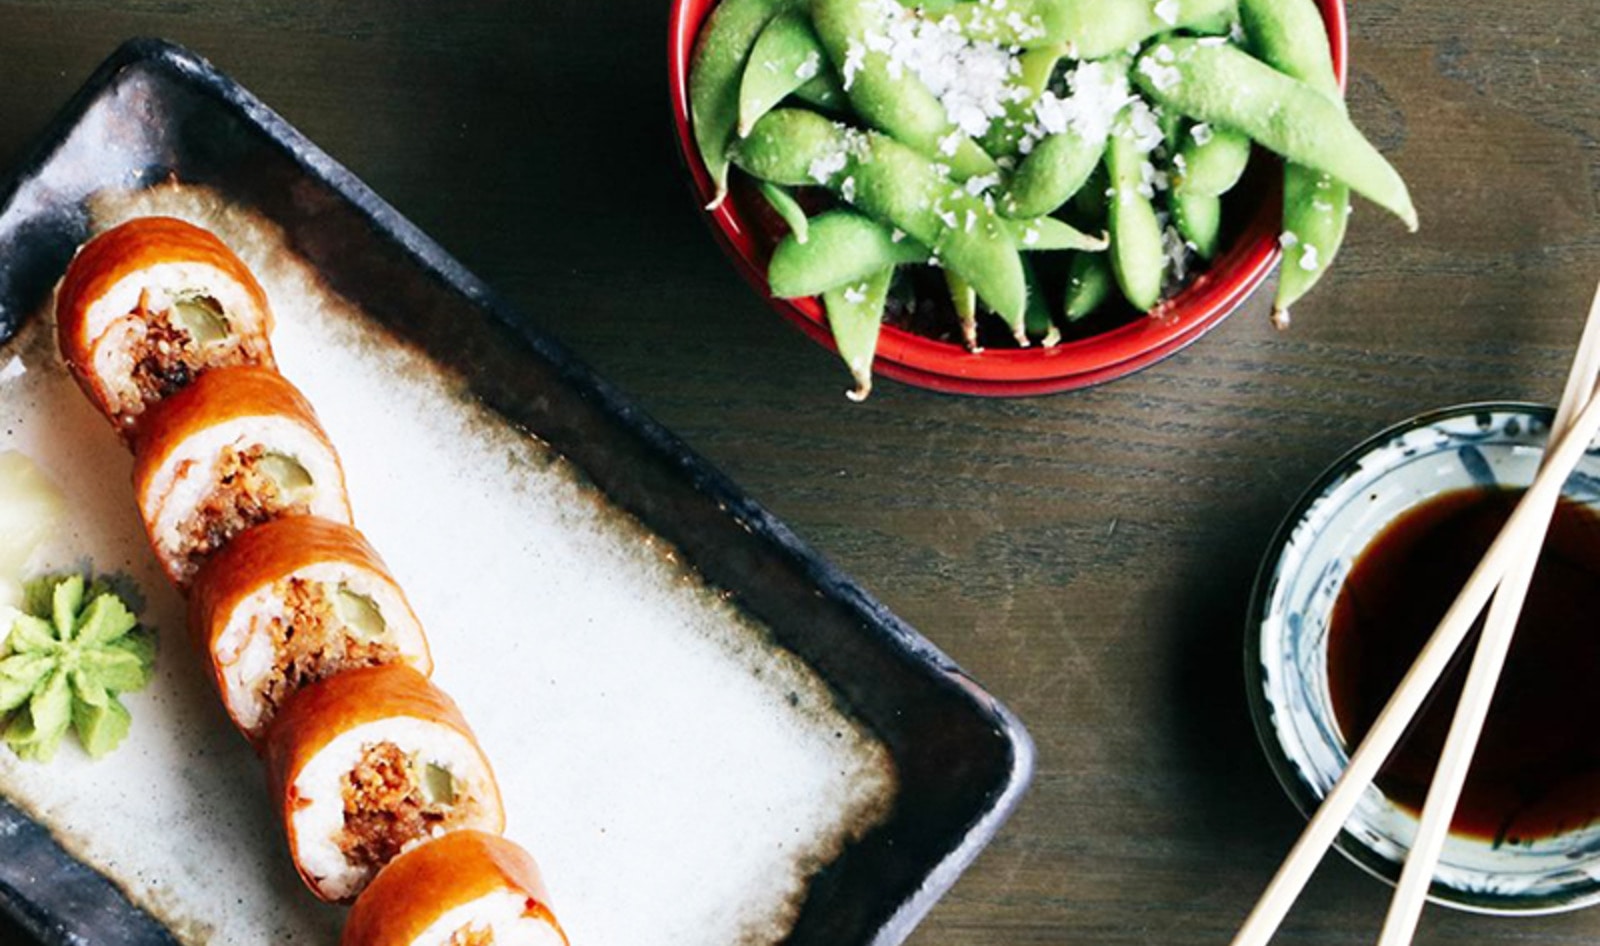 Omaha Sushi Restaurant Celebrates World Vegan Month with Plant-Based Sushi